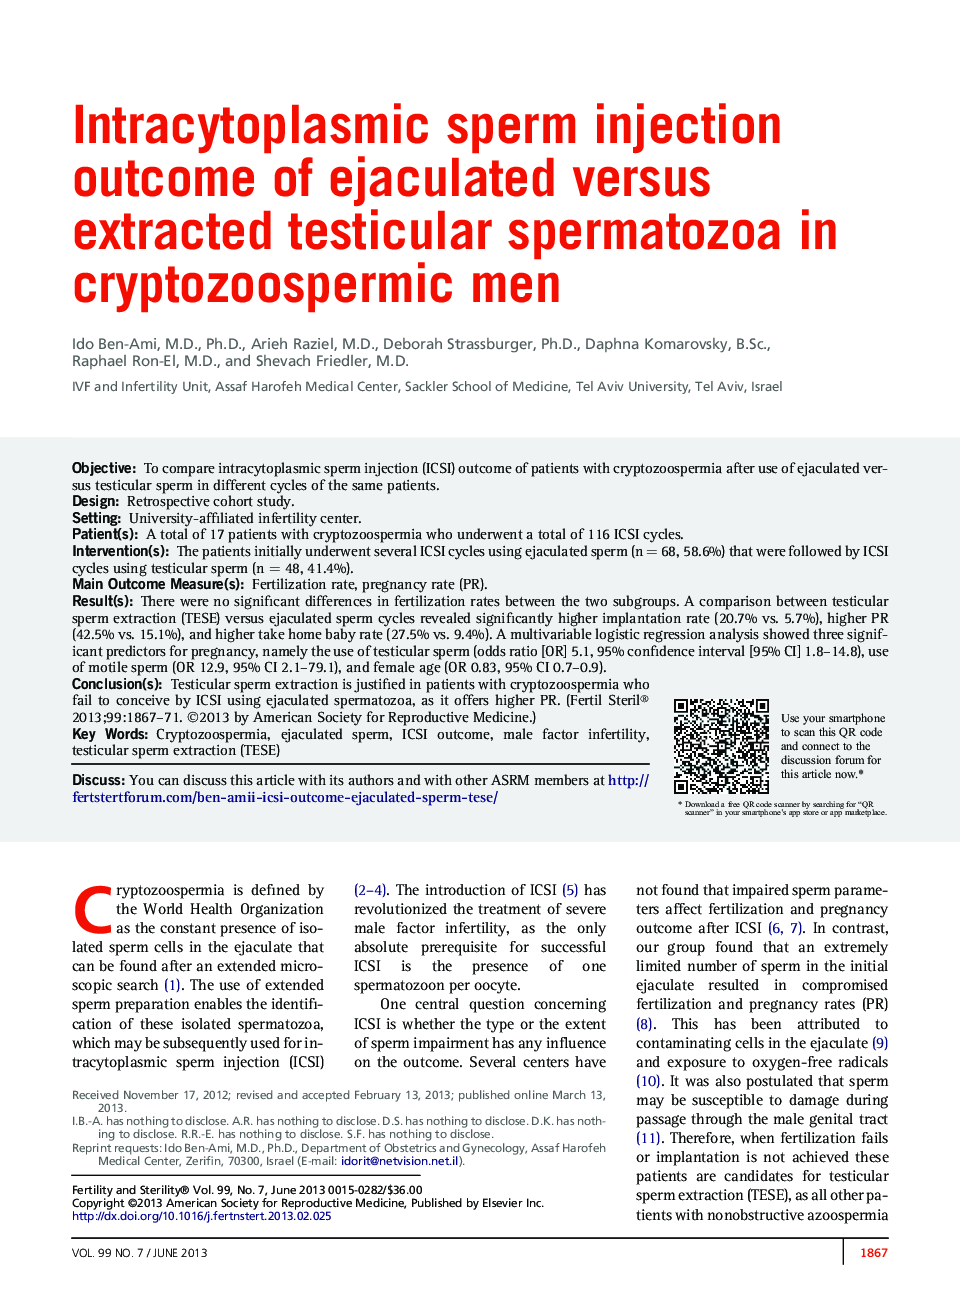 نتیجه تزریق اسپرم درون سیتوپلاسمی اسپرم های بیضه در مقیاس انسدادی و استخراج شده در مردان کریپتوپوزوپرمیک 